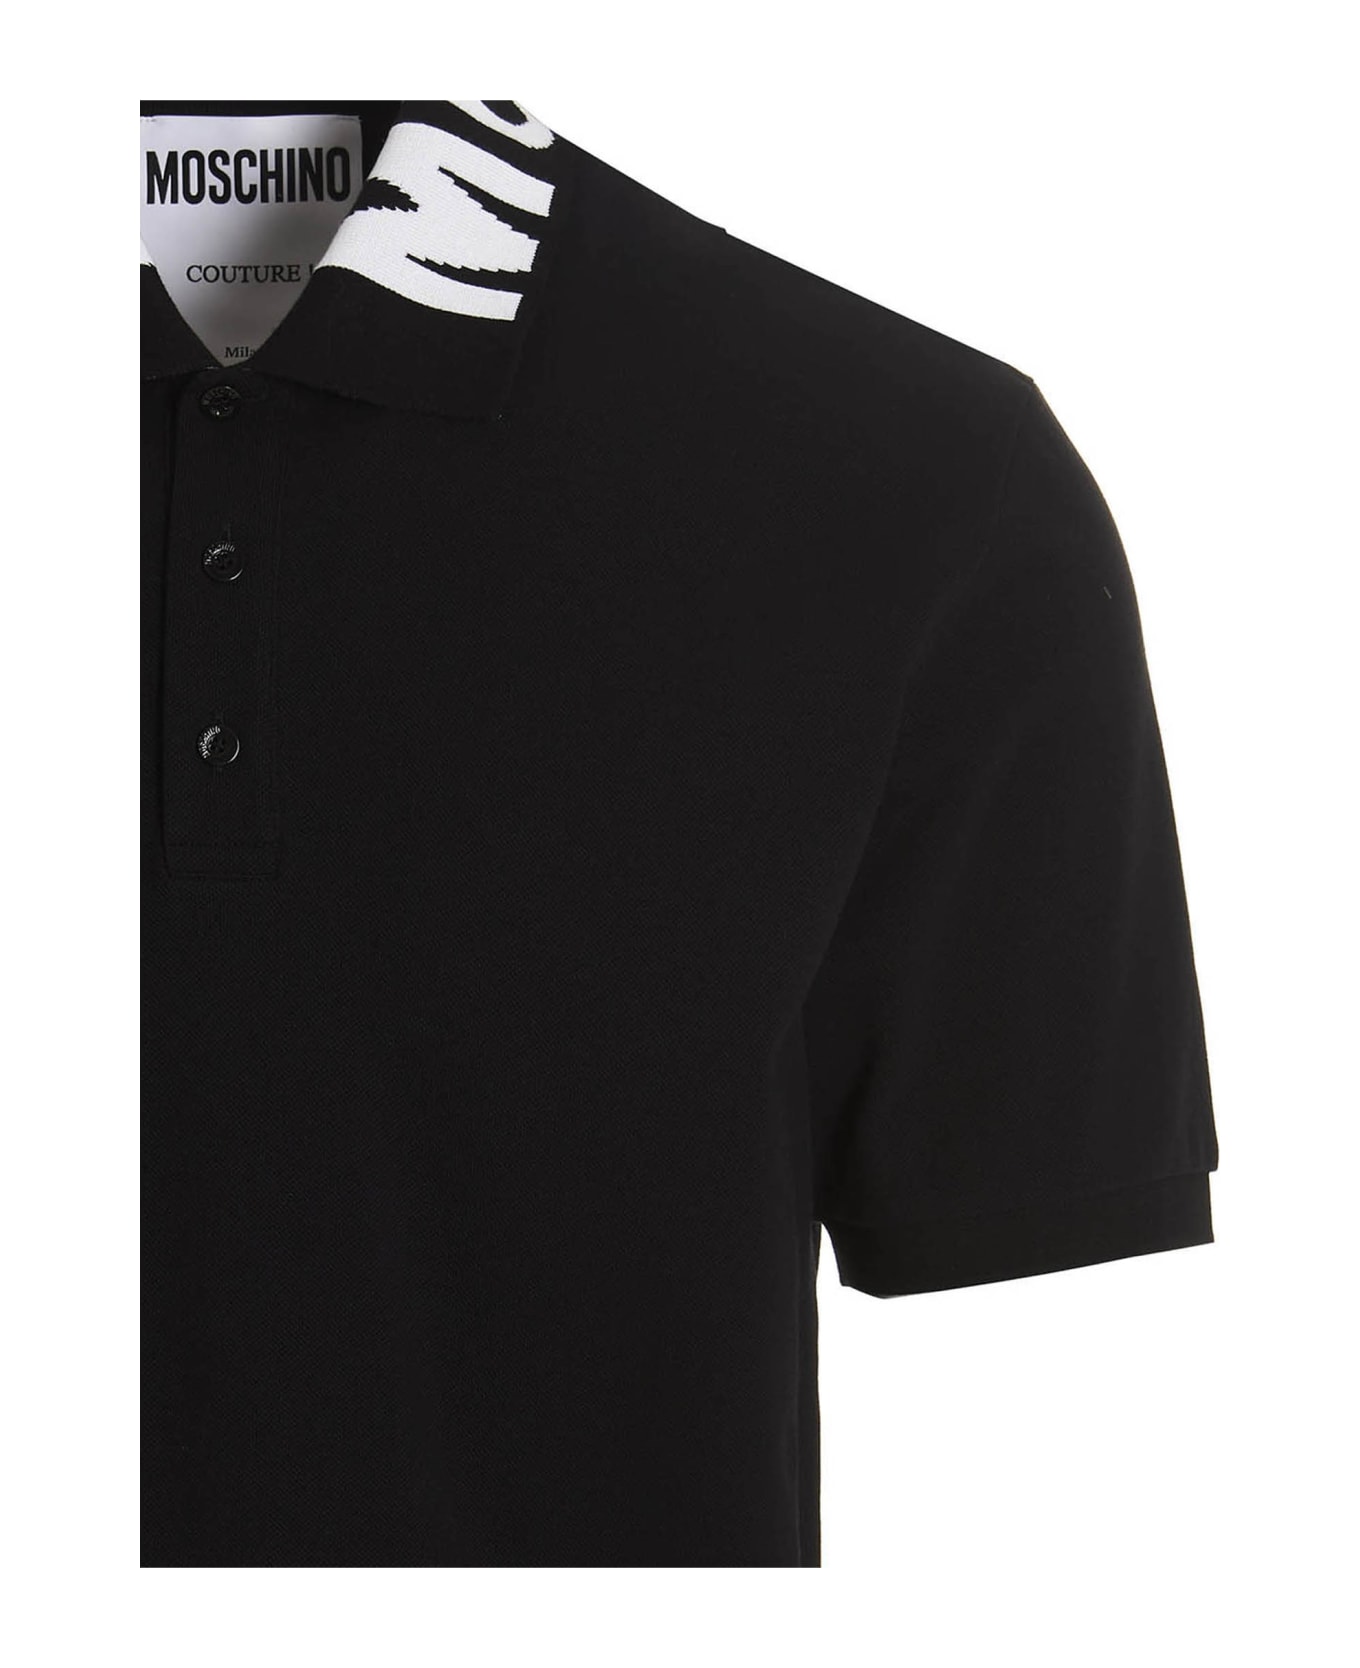 Moschino Logo Collar striped Polo Shirt - Black  